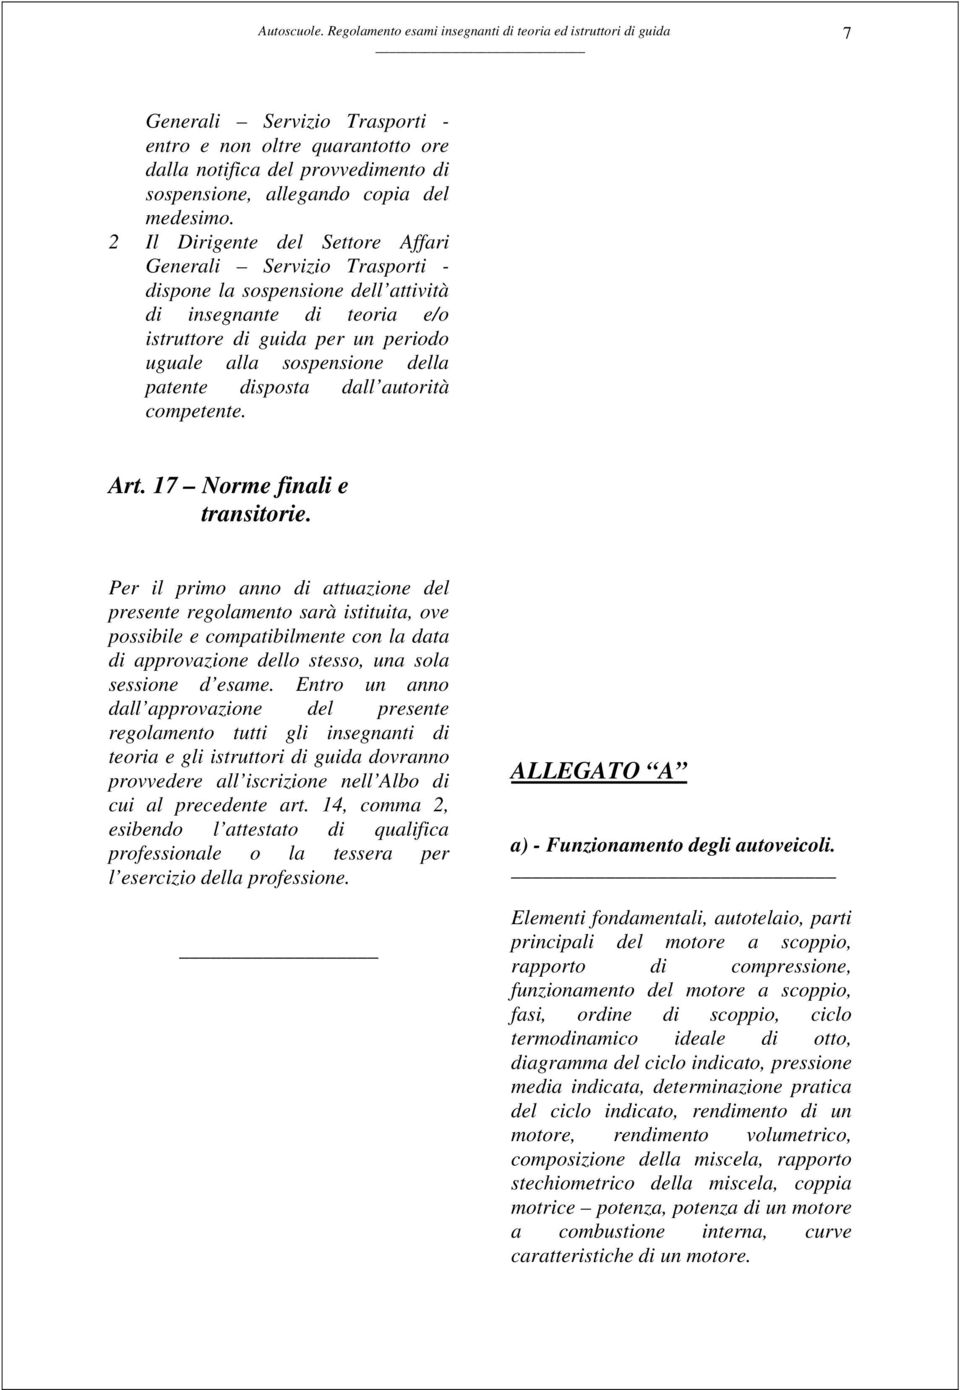 patente disposta dall autorità competente. Art. 17 Norme finali e transitorie.